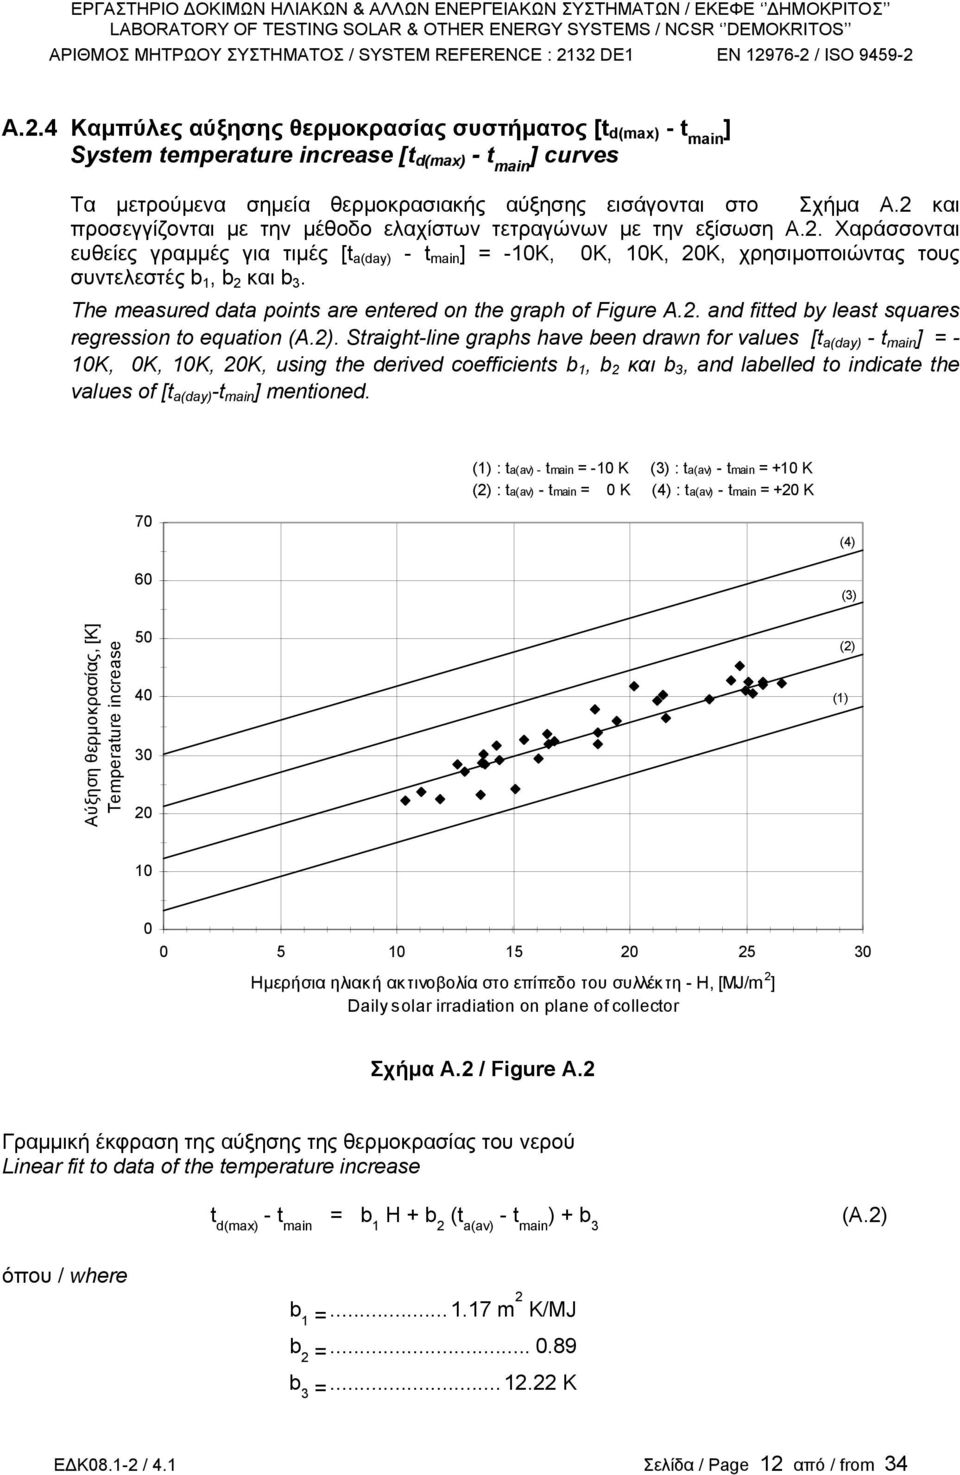 Τhe measured data points are entered on the graph of Figure A.2. and fitted by least squares regression to equation (A.2).